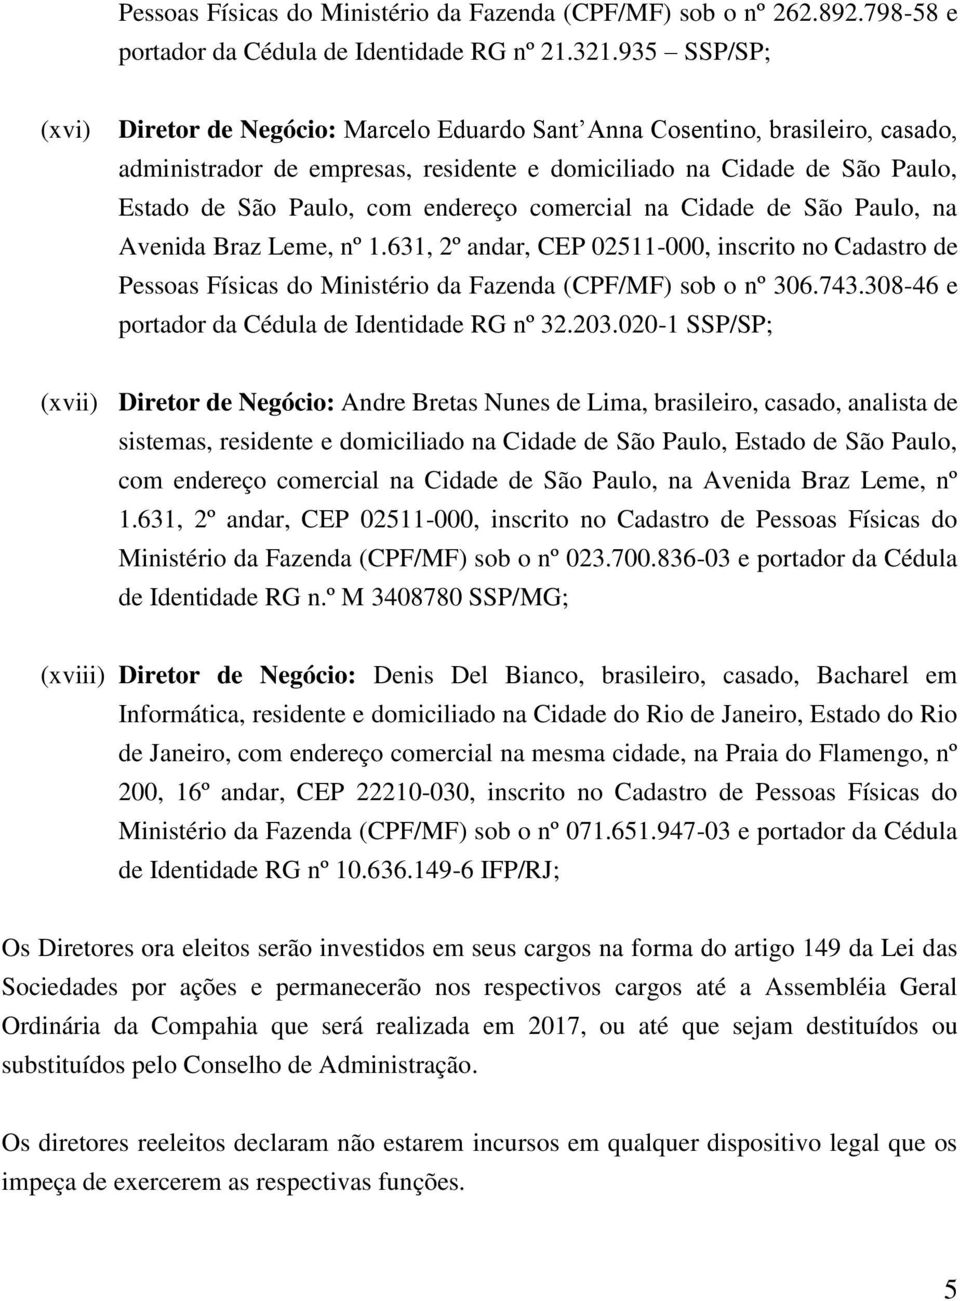 endereço comercial na Cidade de São Paulo, na Pessoas Físicas do Ministério da Fazenda (CPF/MF) sob o nº 306.743.308-46 e portador da Cédula de Identidade RG nº 32.203.